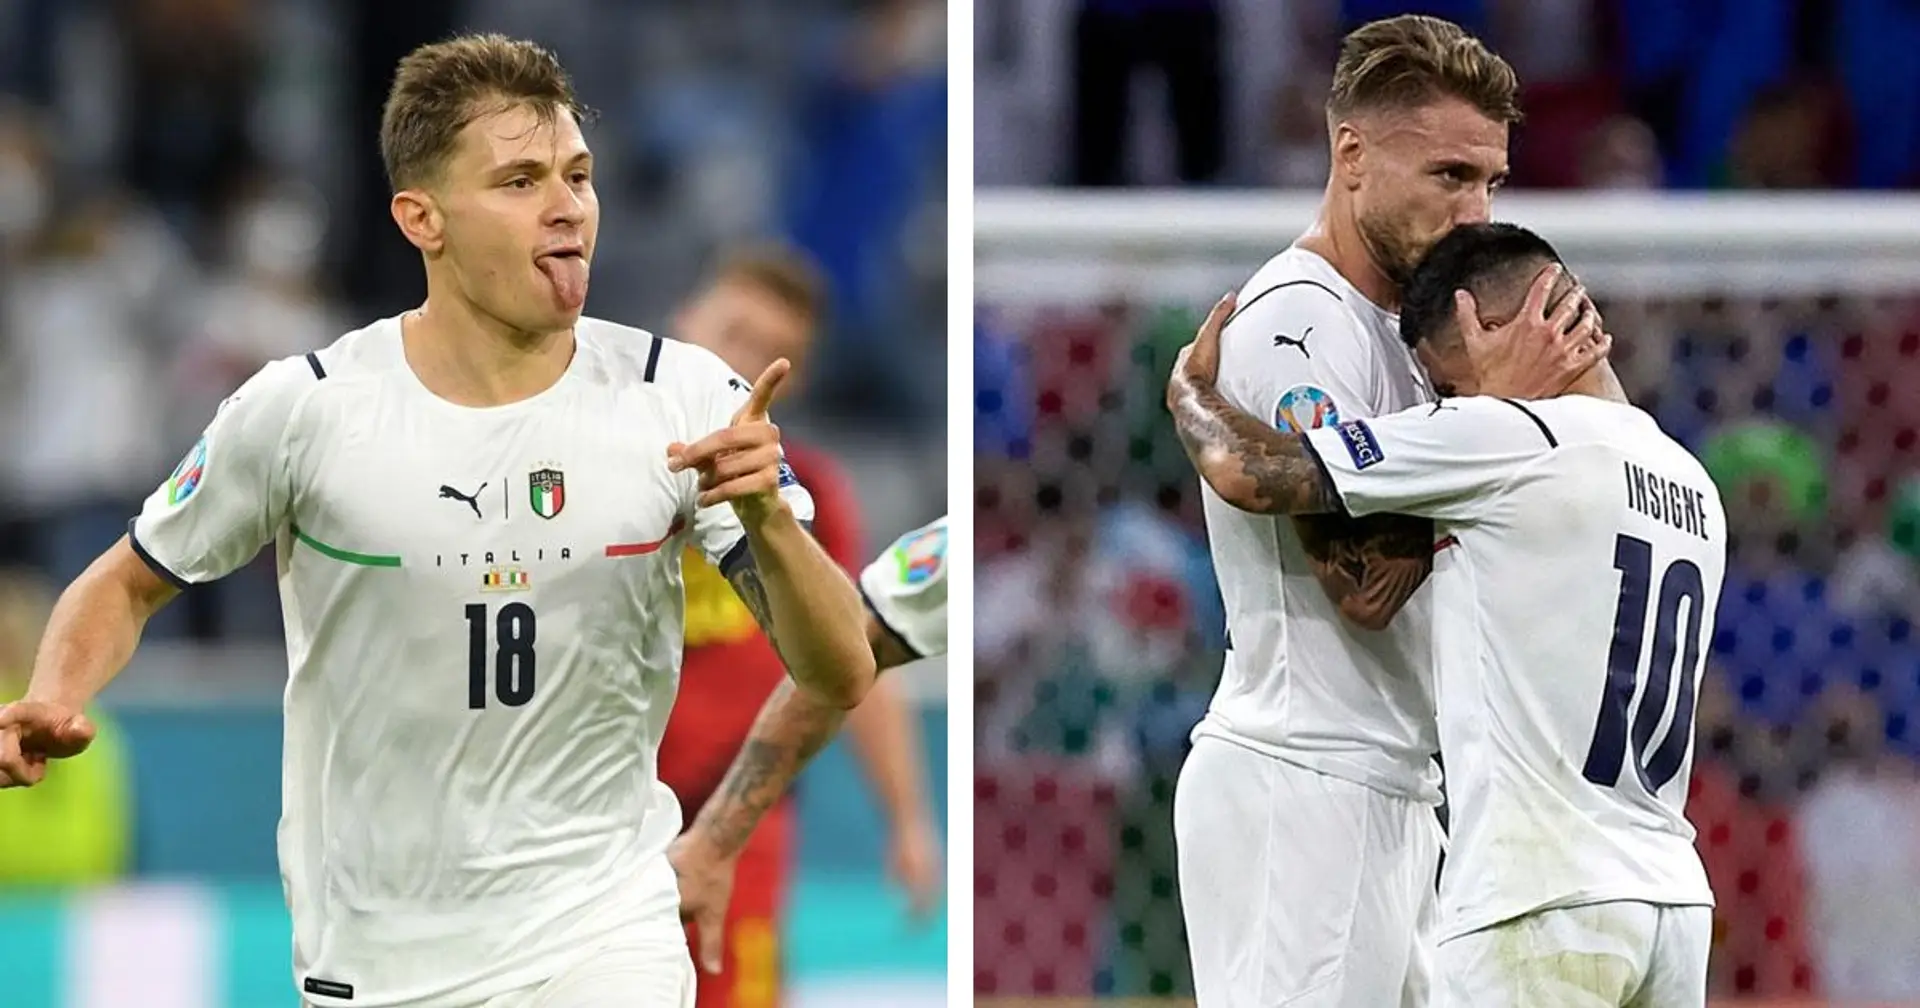 L'Italia batte 2-1 il Belgio ed è in semifinale di EURO 2020! Entusiasmo alle stelle dei tifosi azzurri sui social